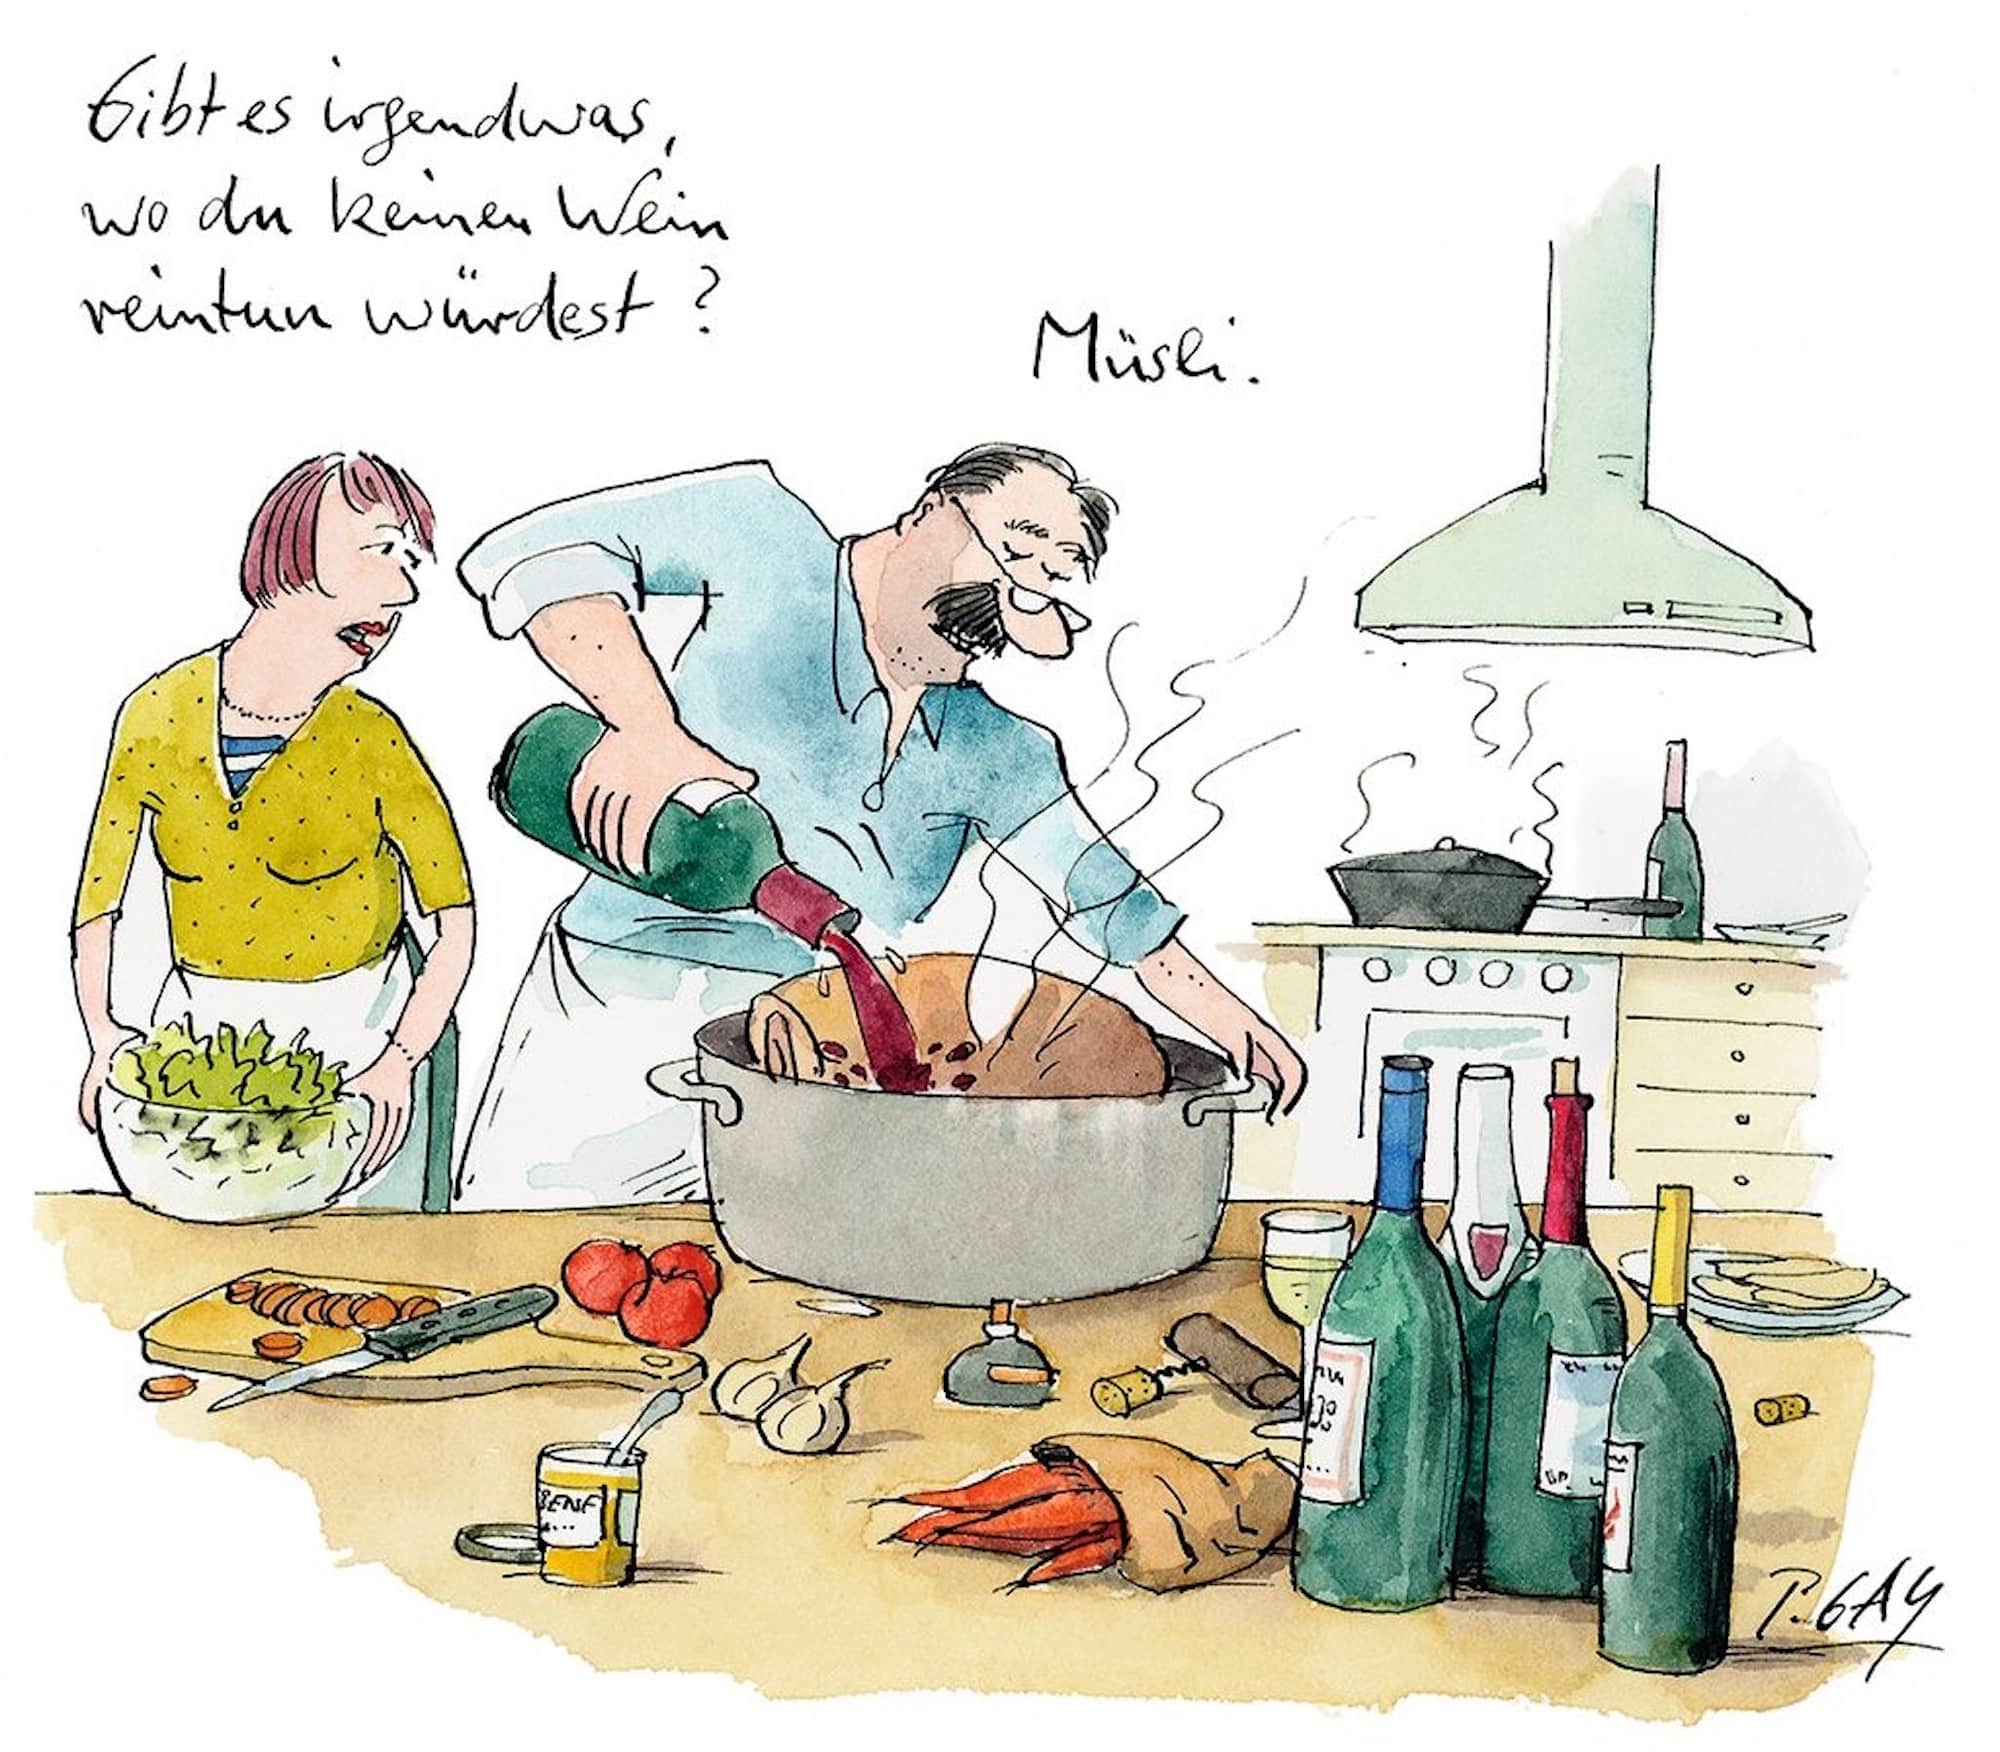 Die Karrikatur zeigt einen Mann und eine Frau die gemeinsam in der Küche kochen